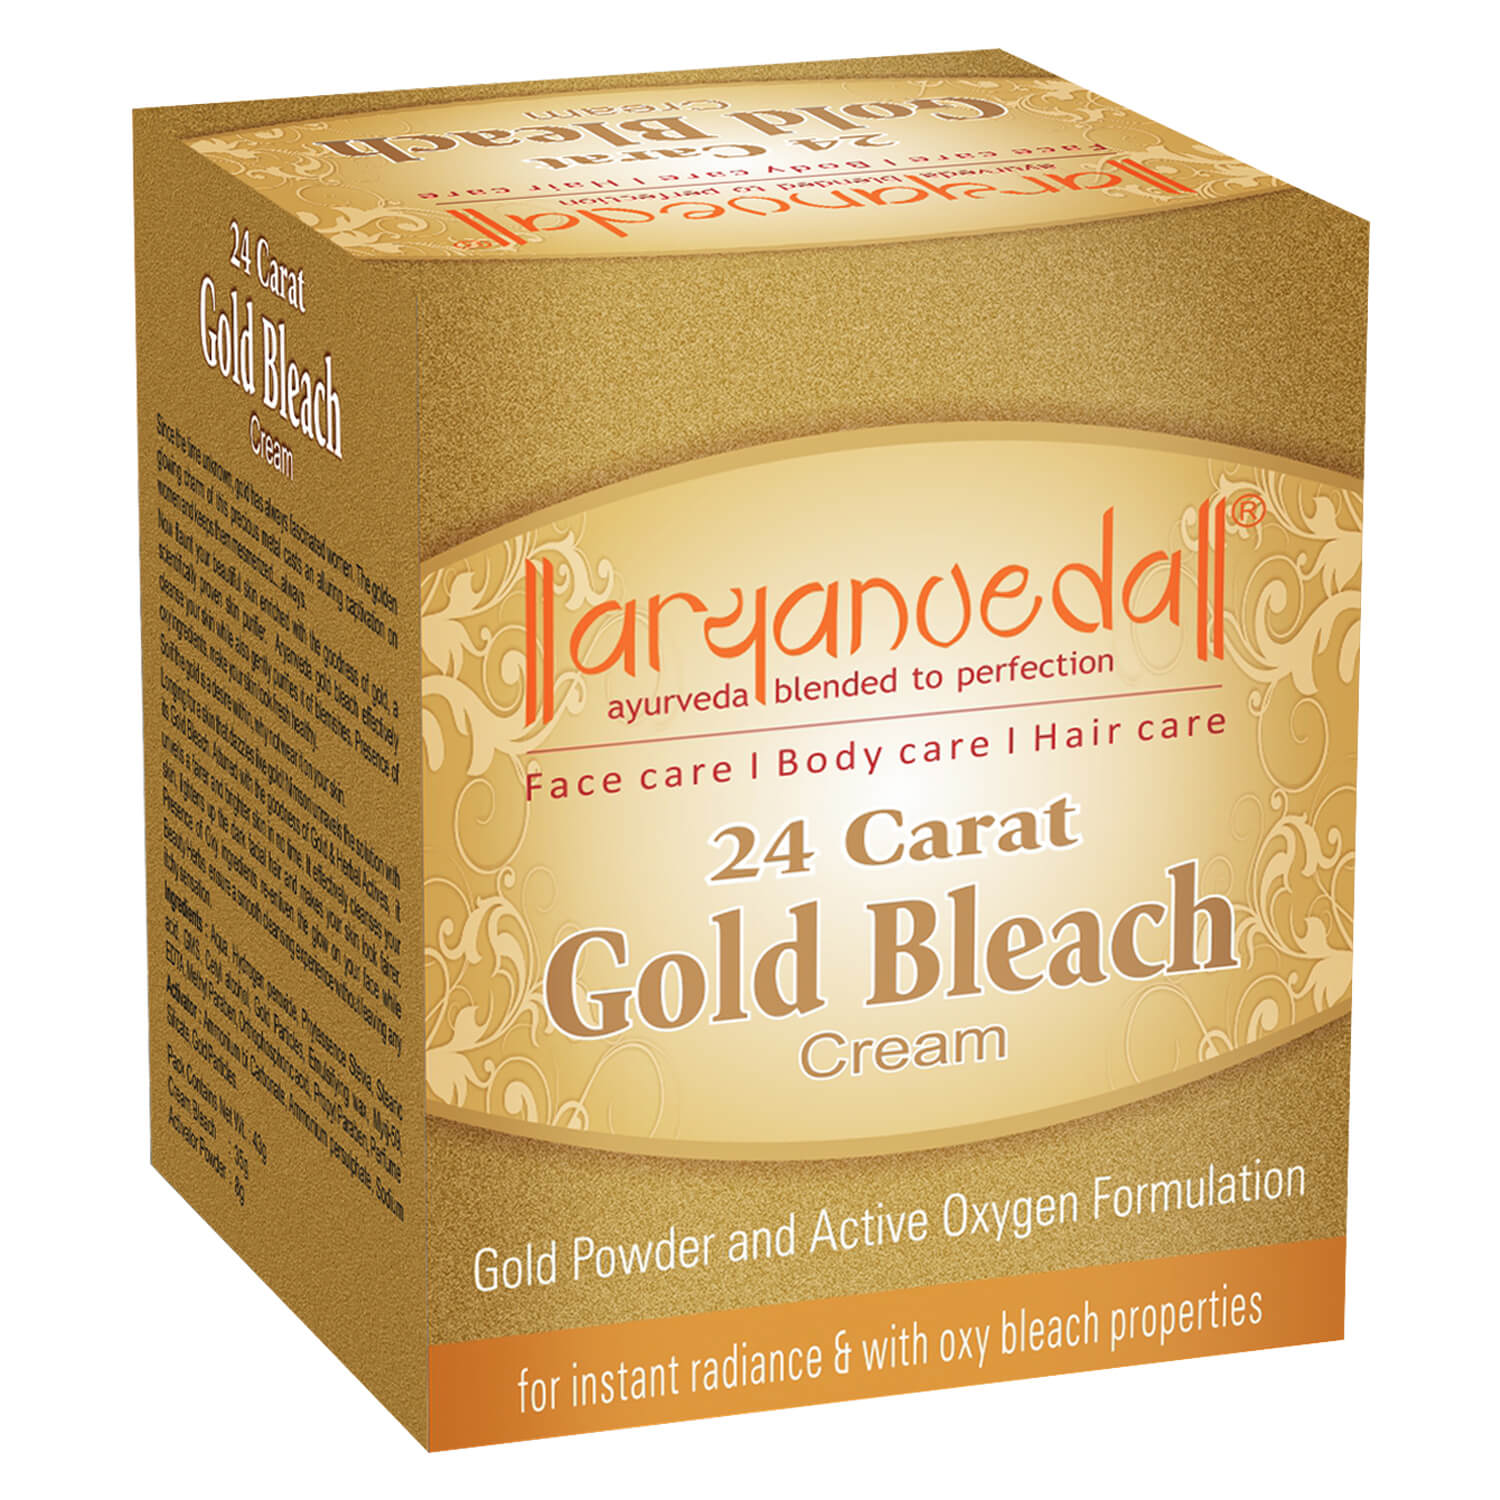 Aryanveda Gold Facial Skin Bleach Cream 24g